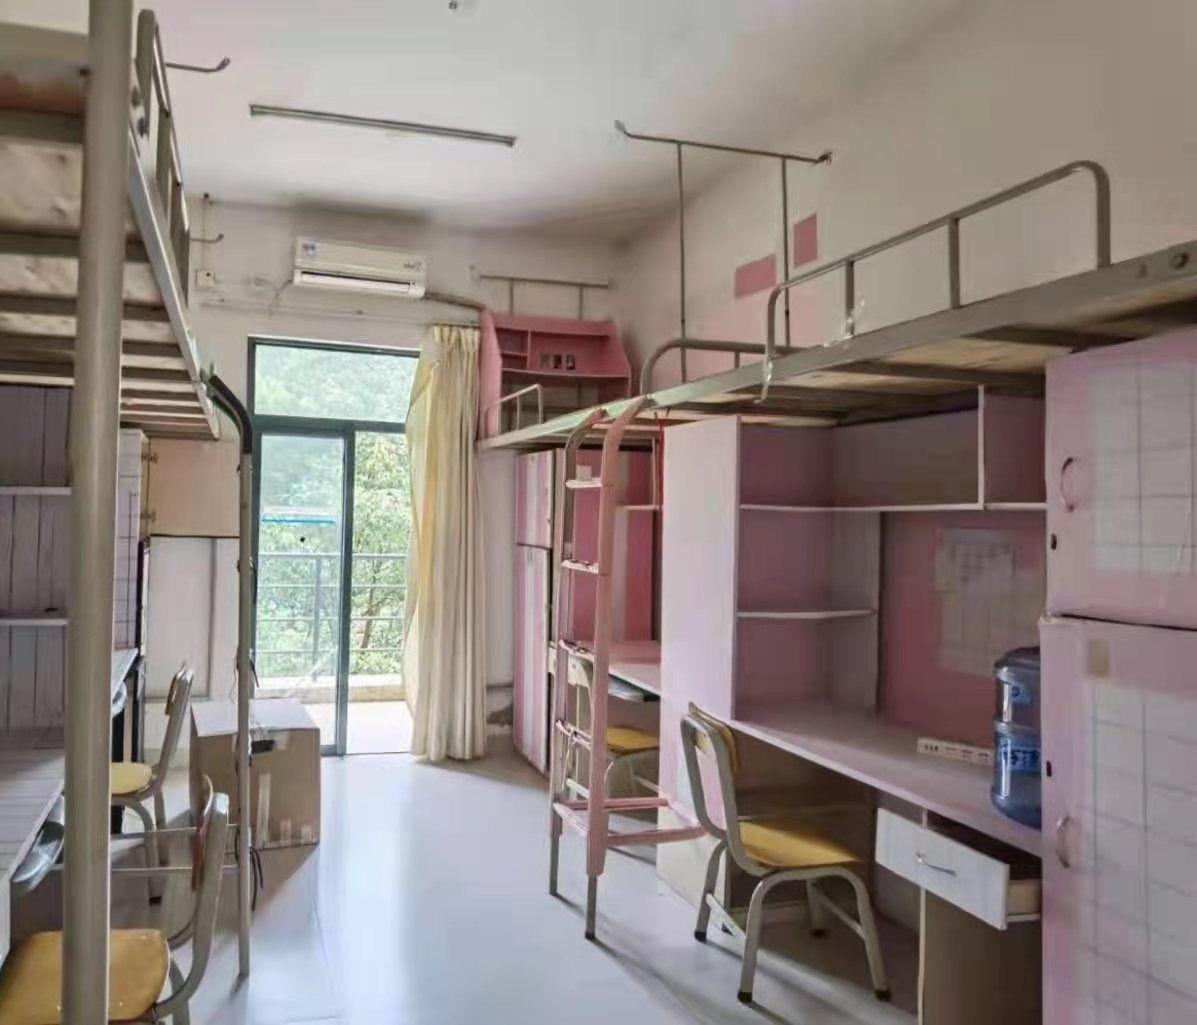 北京师范大学寝室照片图片